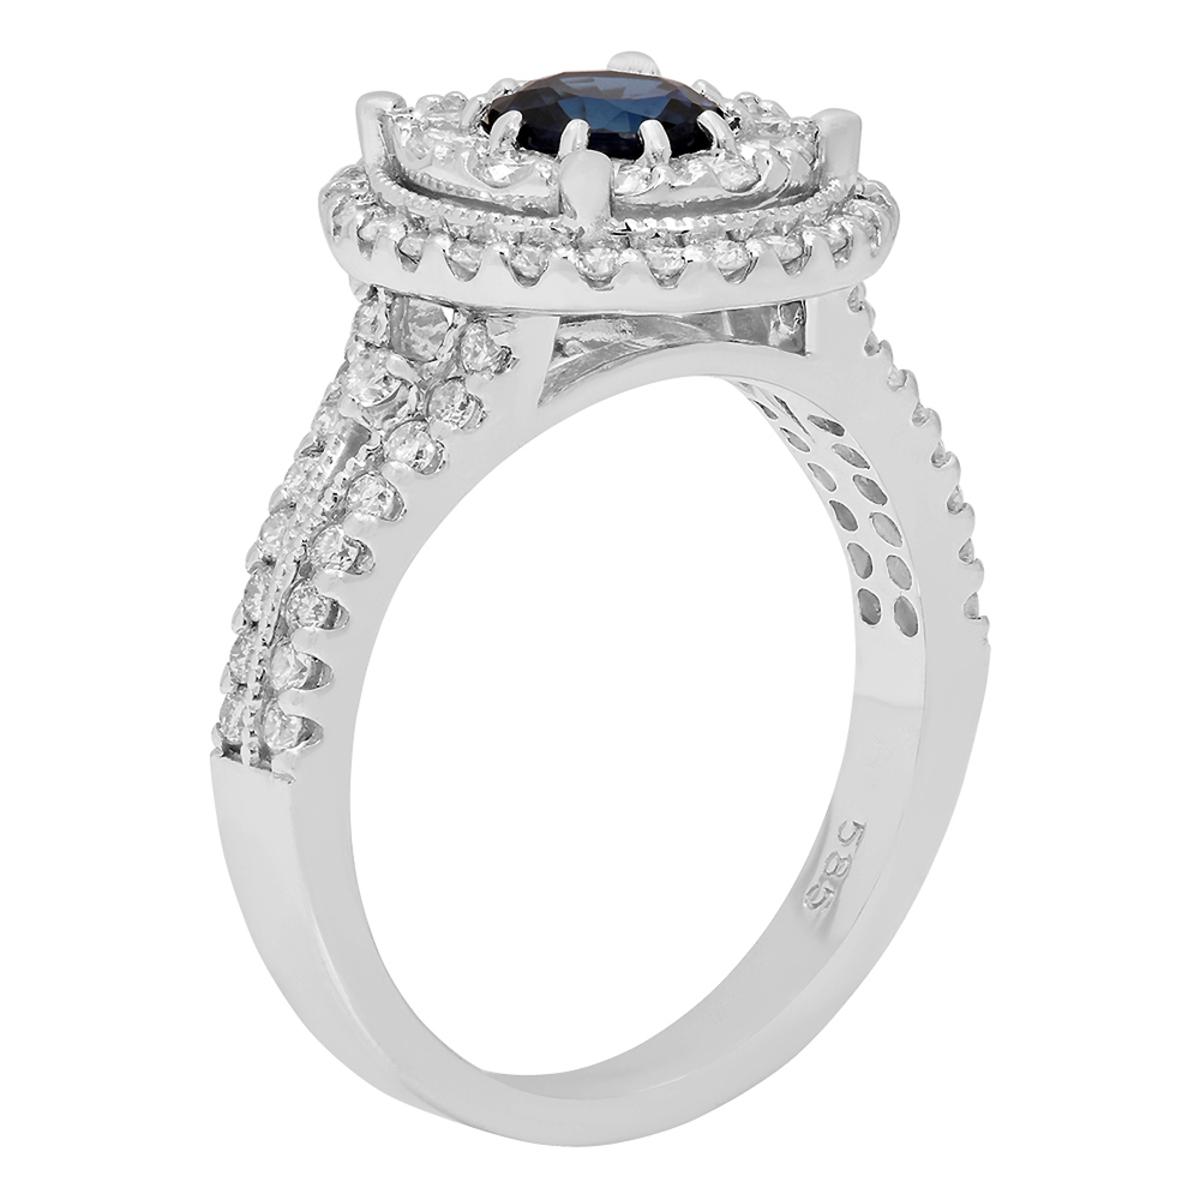 14k White Gold 0.85ct Sapphire 1.12ct Diamond Ring